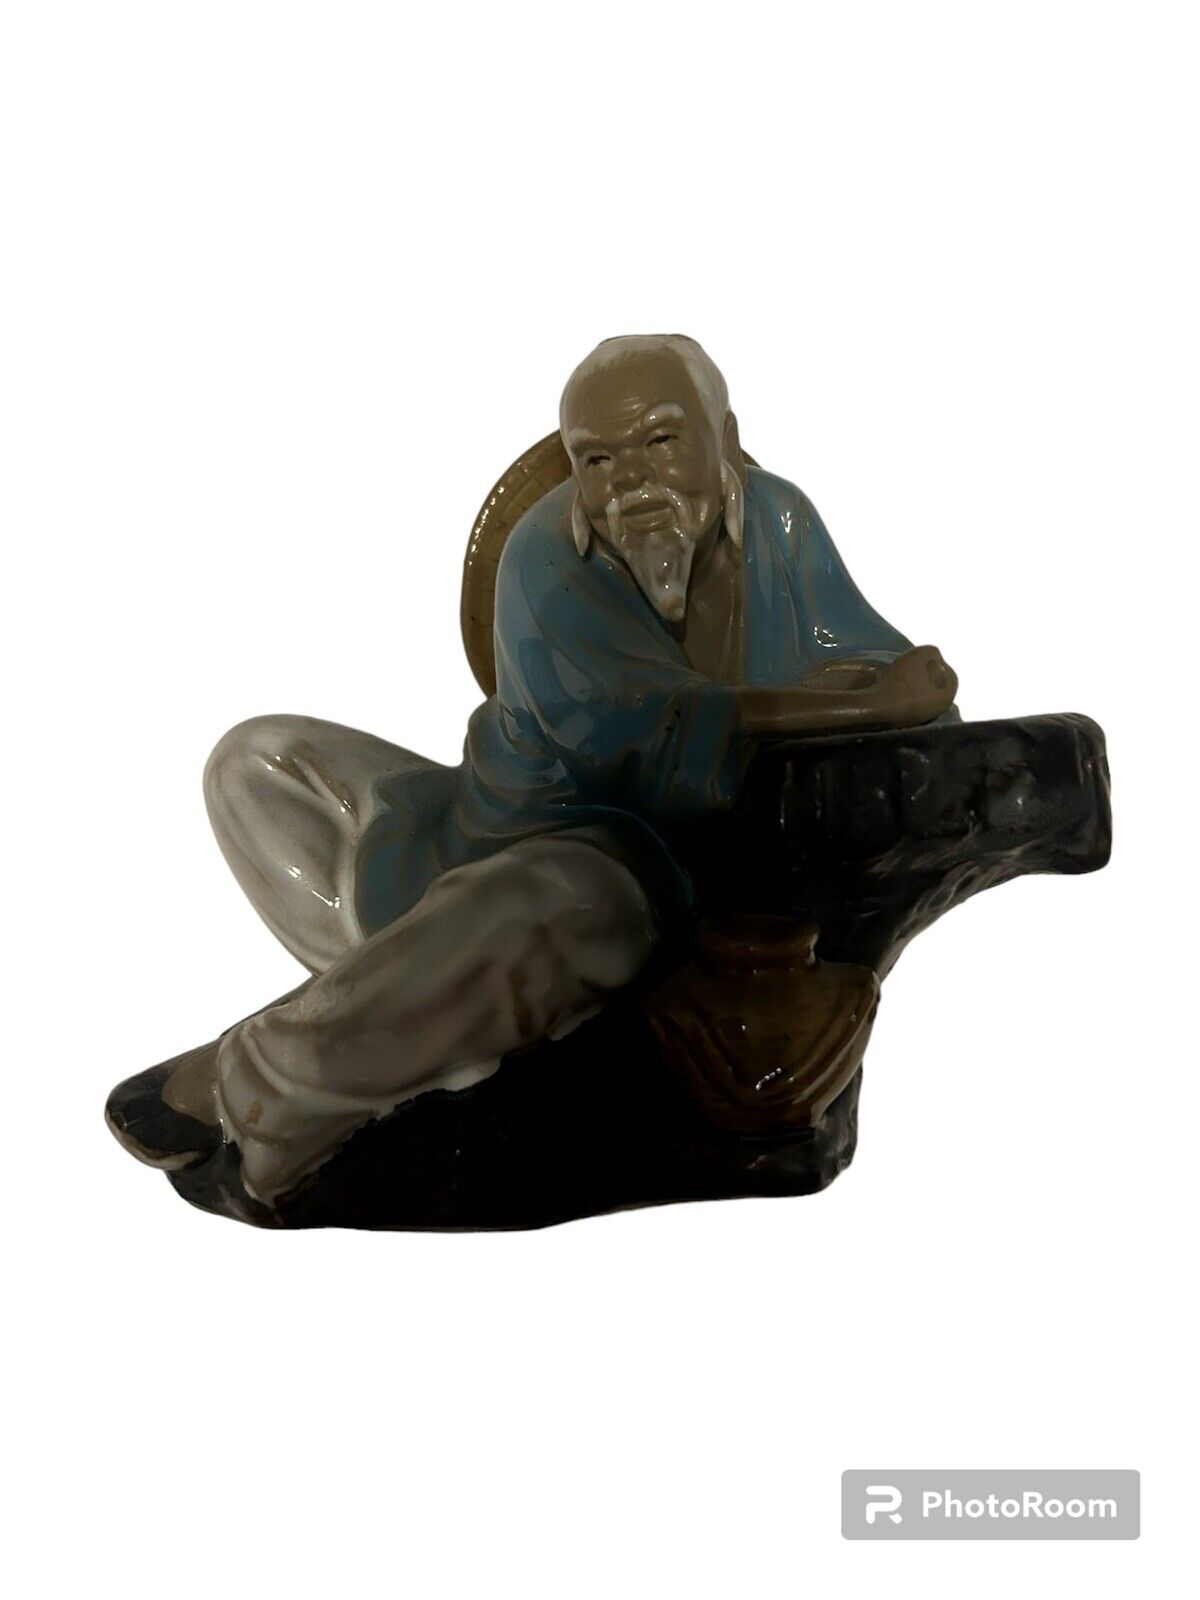 Vintage Shiwan Ceramic Chinese Mud Man 6inch Sitting Figure